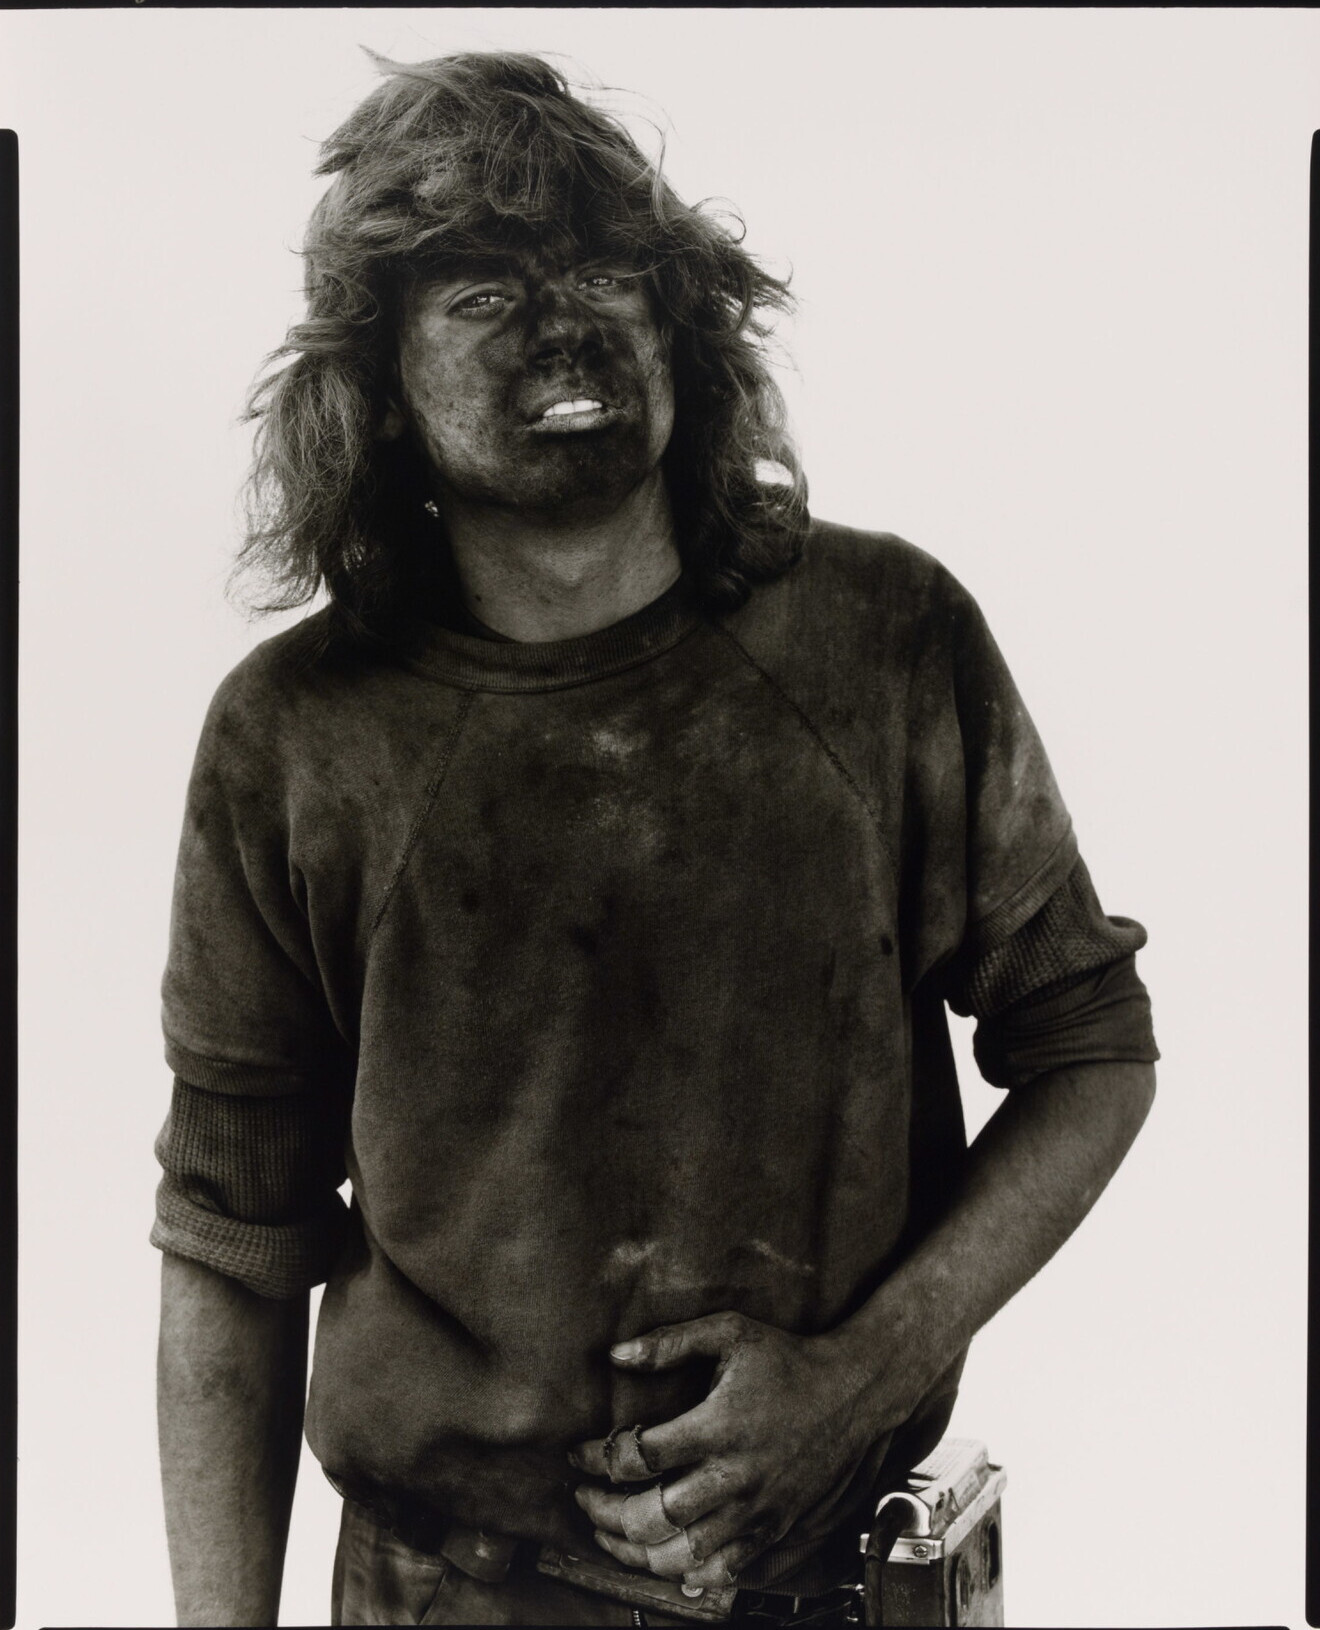 Дональд Кин, шахтер, Reliance, Вайоминг, 1979 г. Фотограф Ричард Аведон